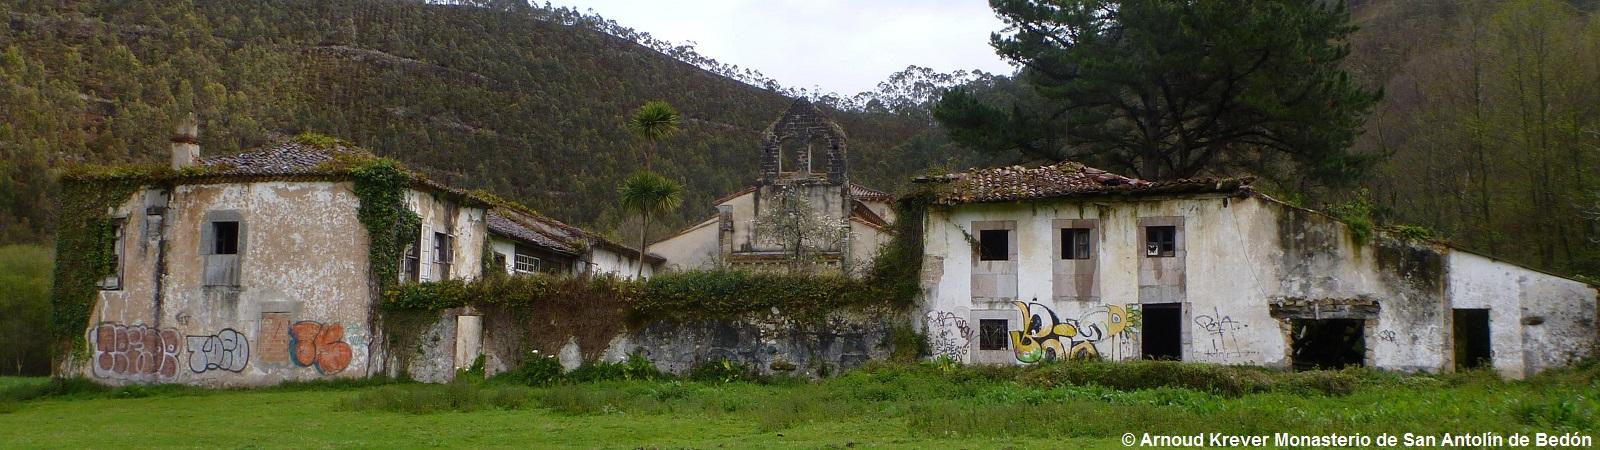 2012 Costa-Norte (985) Monasterio de San Antolín de Bedón, 11e-13e eeuw